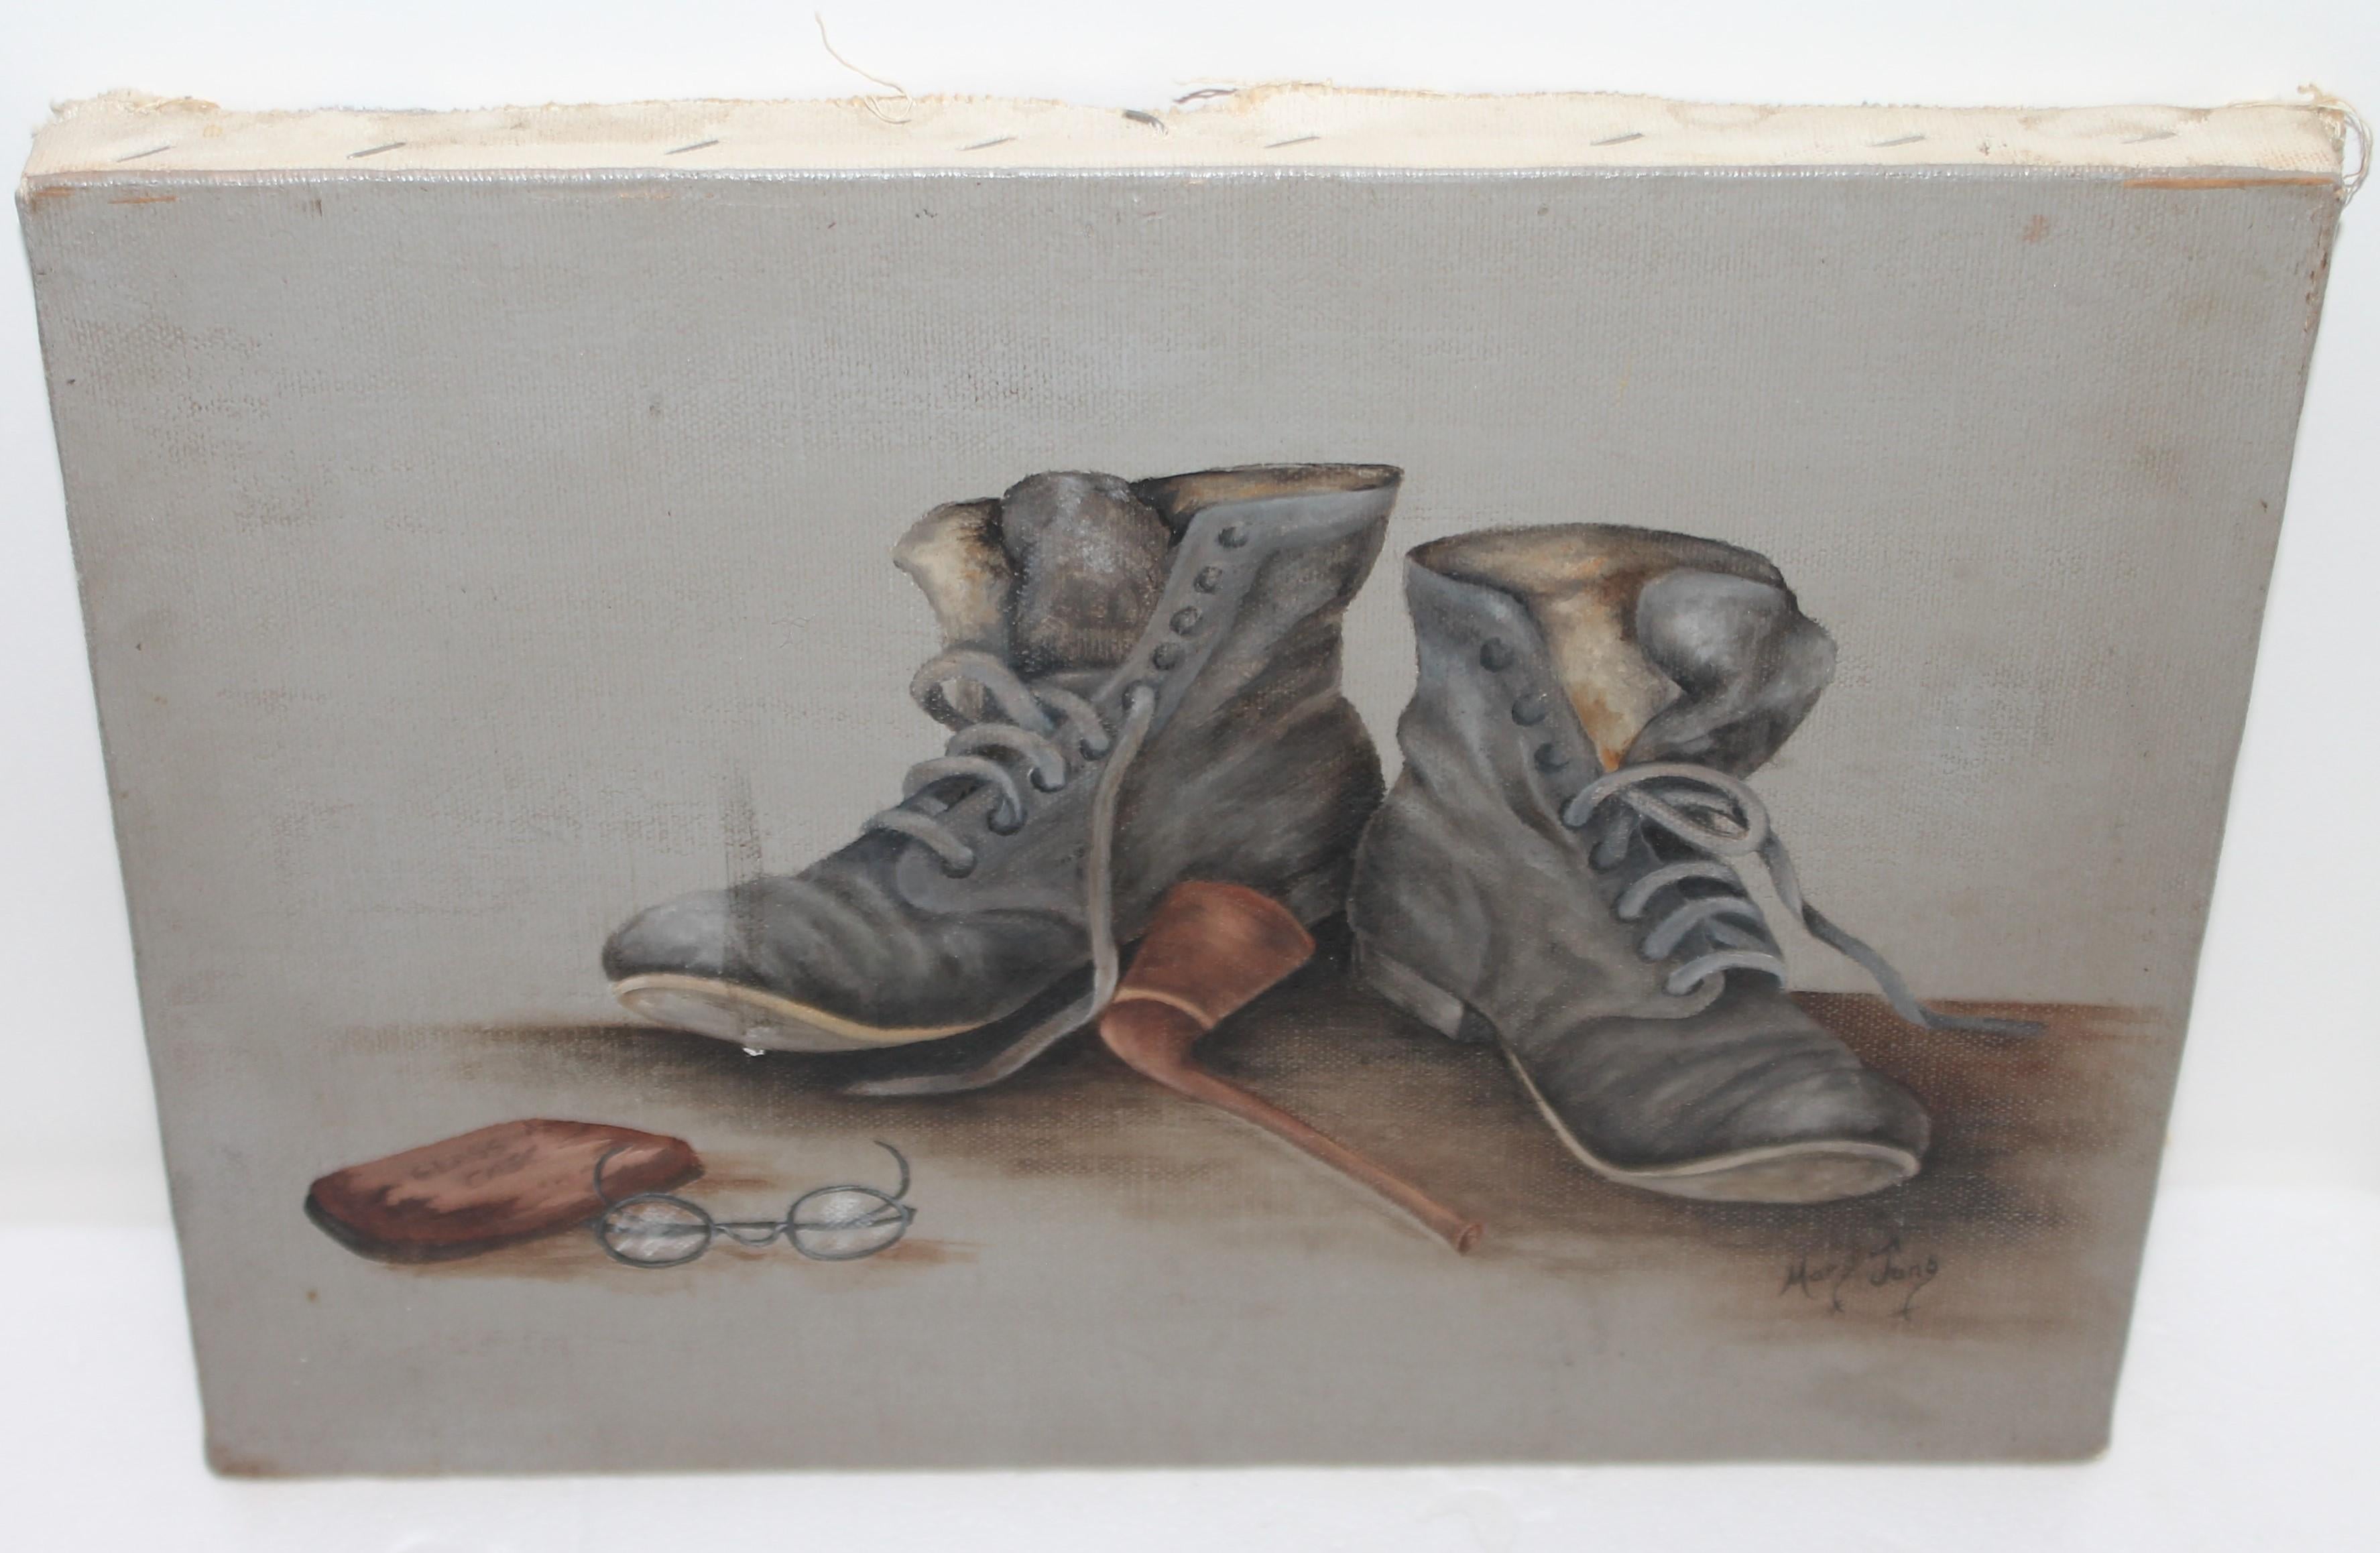 Signiertes Ölgemälde von Stiefeln und Brille Öl auf Leinwand. Ungerahmt und in tadellosem Zustand. Unterzeichnet von Mary Juno.